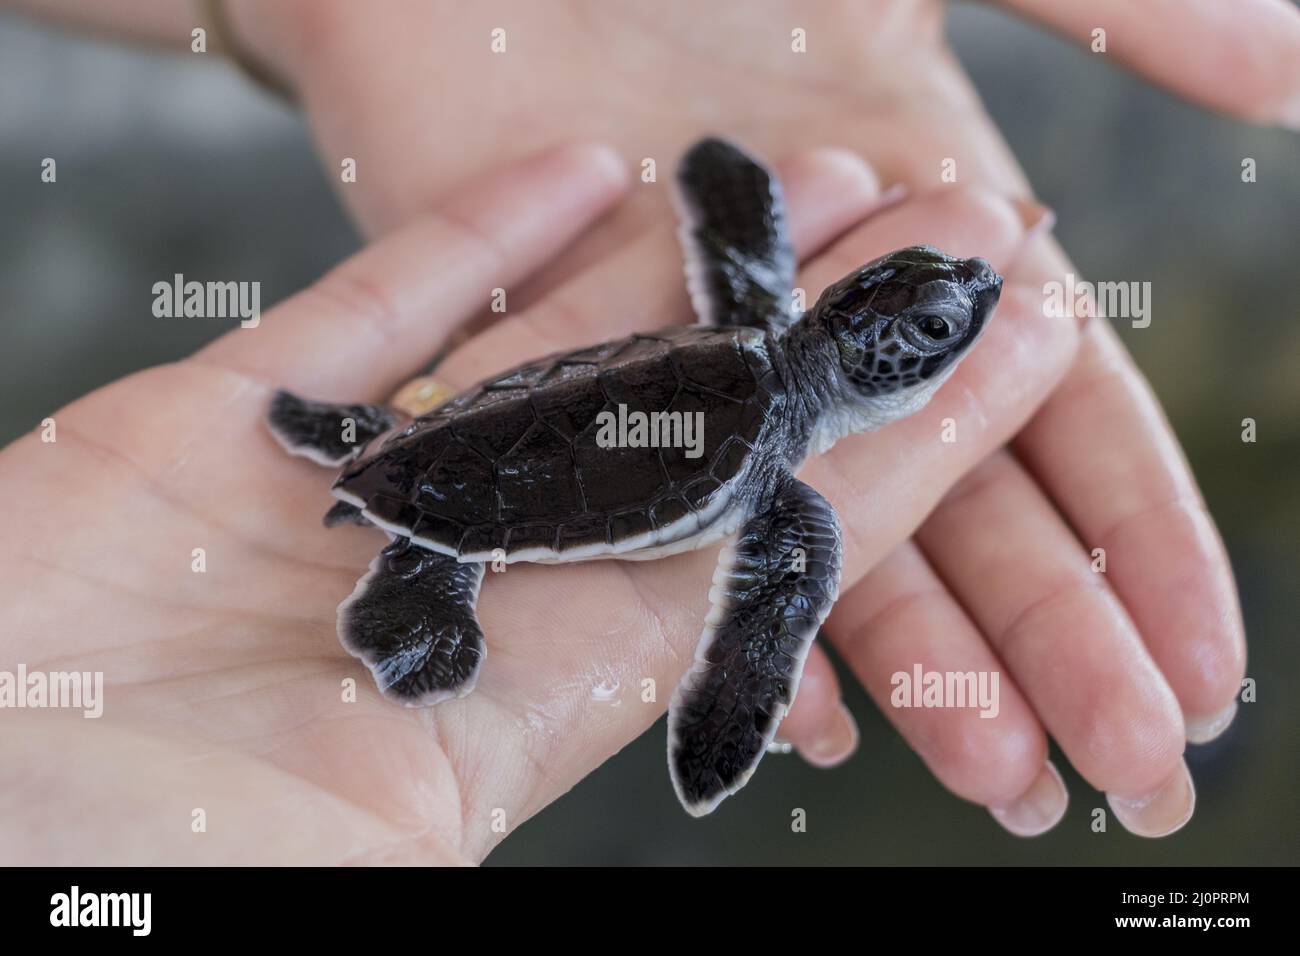 Bébé tortue noir sur les mains. Banque D'Images